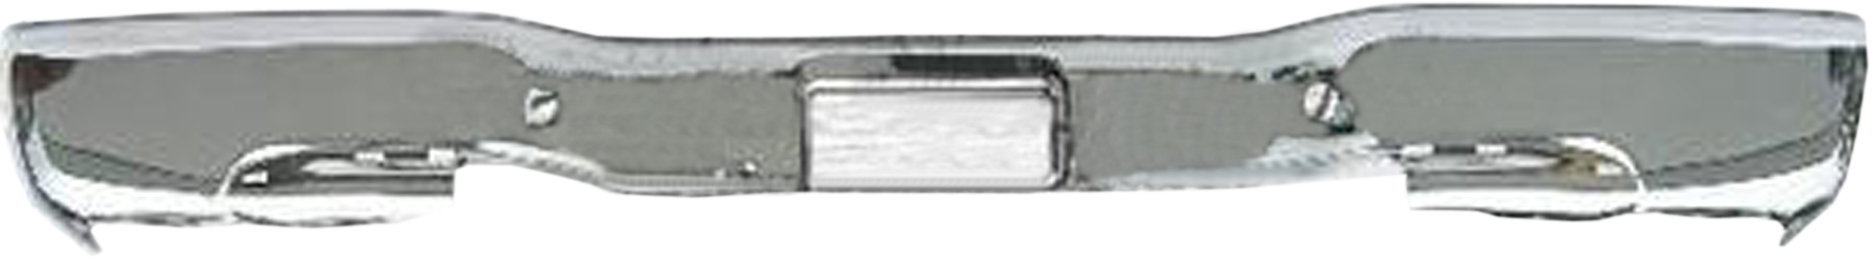 Aftermarket METAL REAR BUMPERS for GMC - SIERRA 1500, SIERRA 1500,99-06,Rear bumper face bar